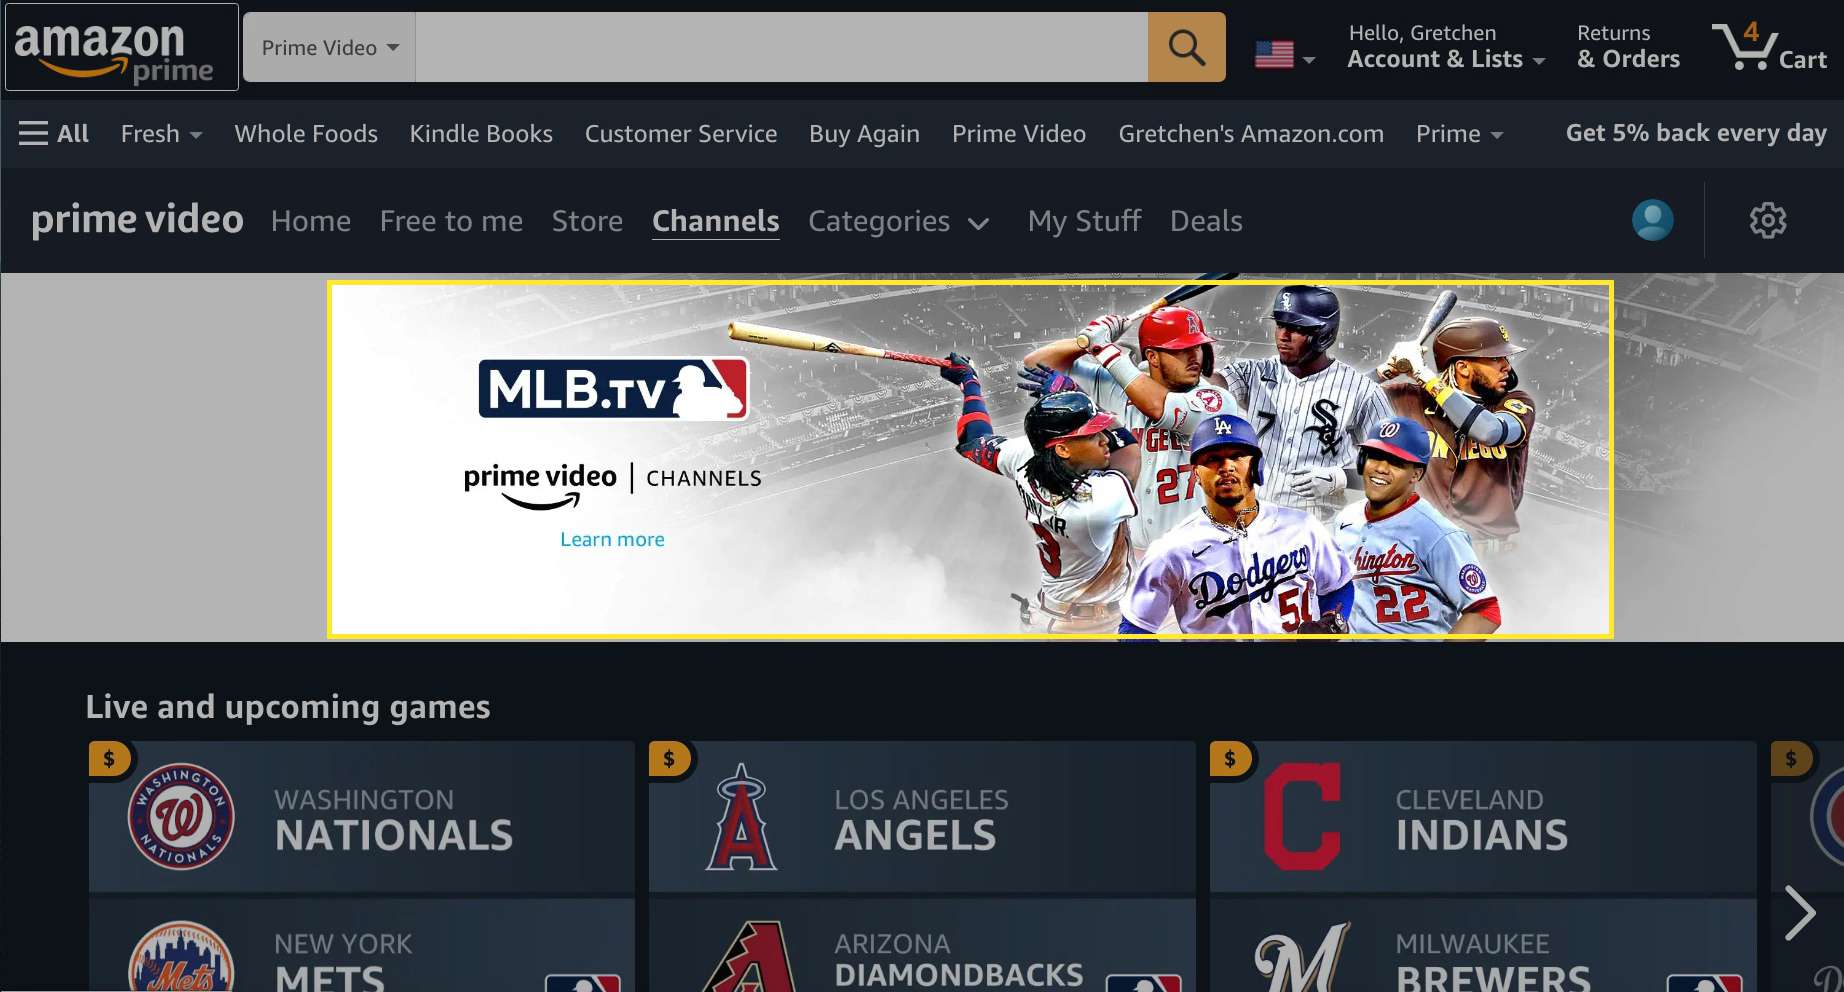 Amazon Prime videokanaler med MLB.TV markerade